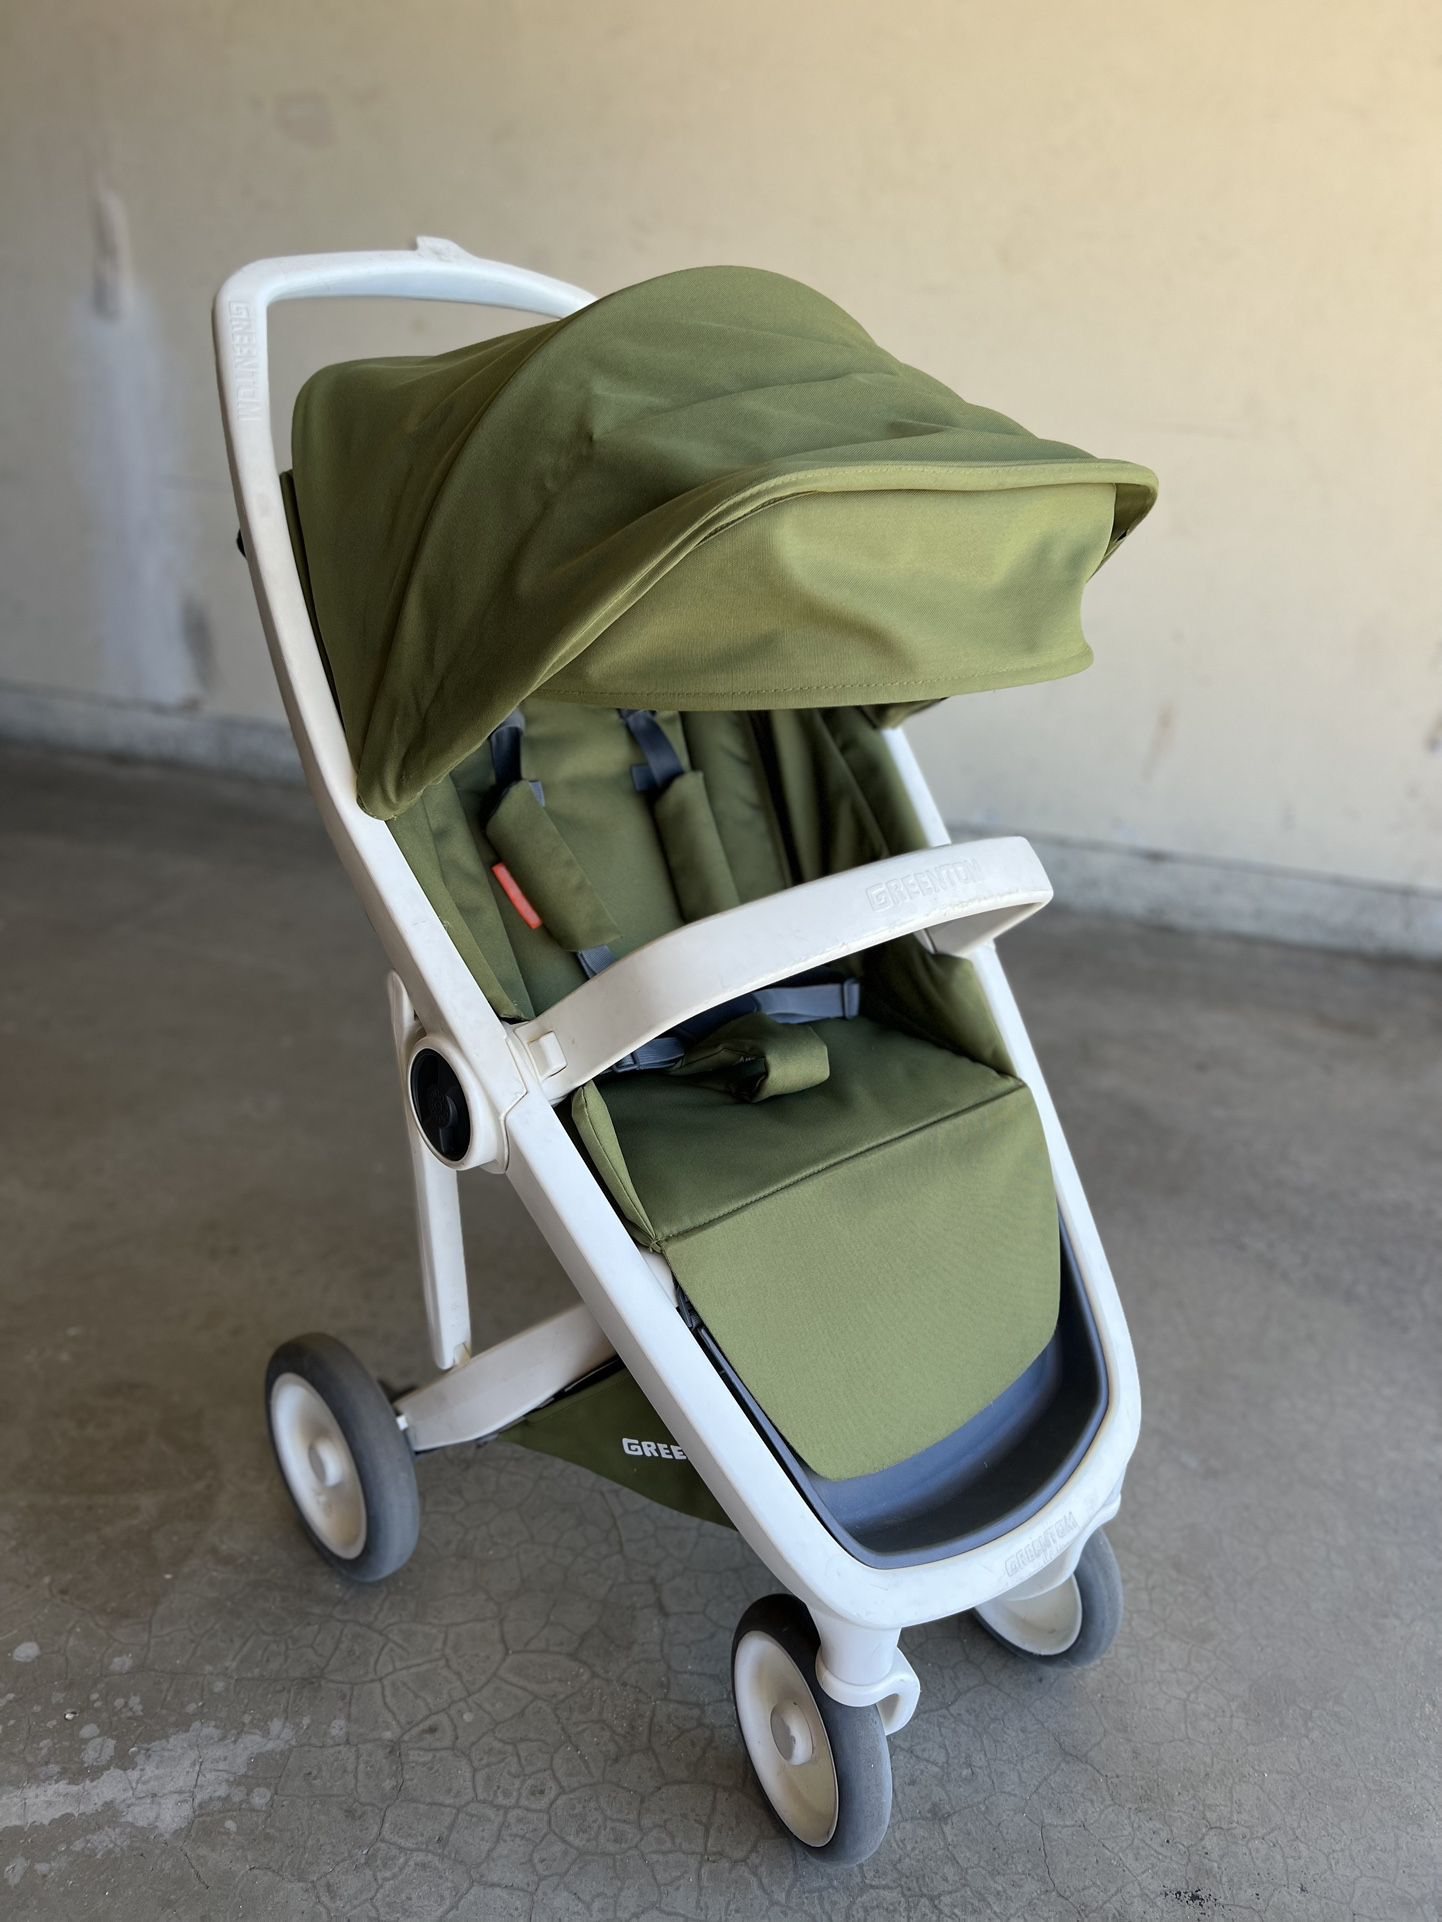 Stroller Greentom  For Babies 6months+